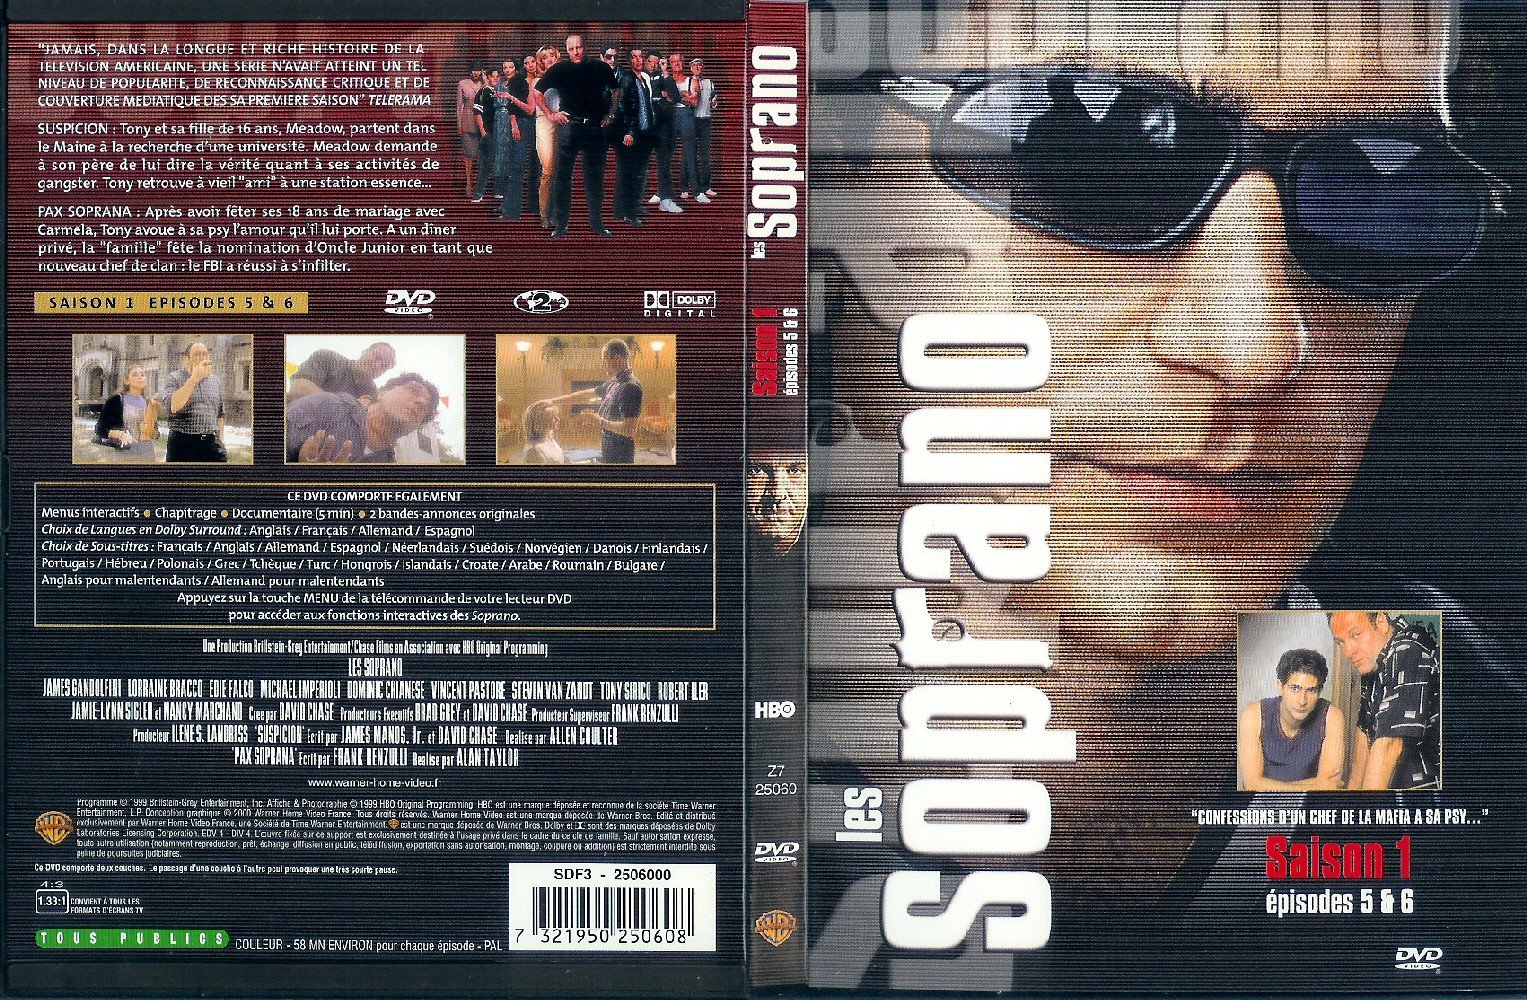 Jaquette DVD Les Soprano Saison 1 vol 3